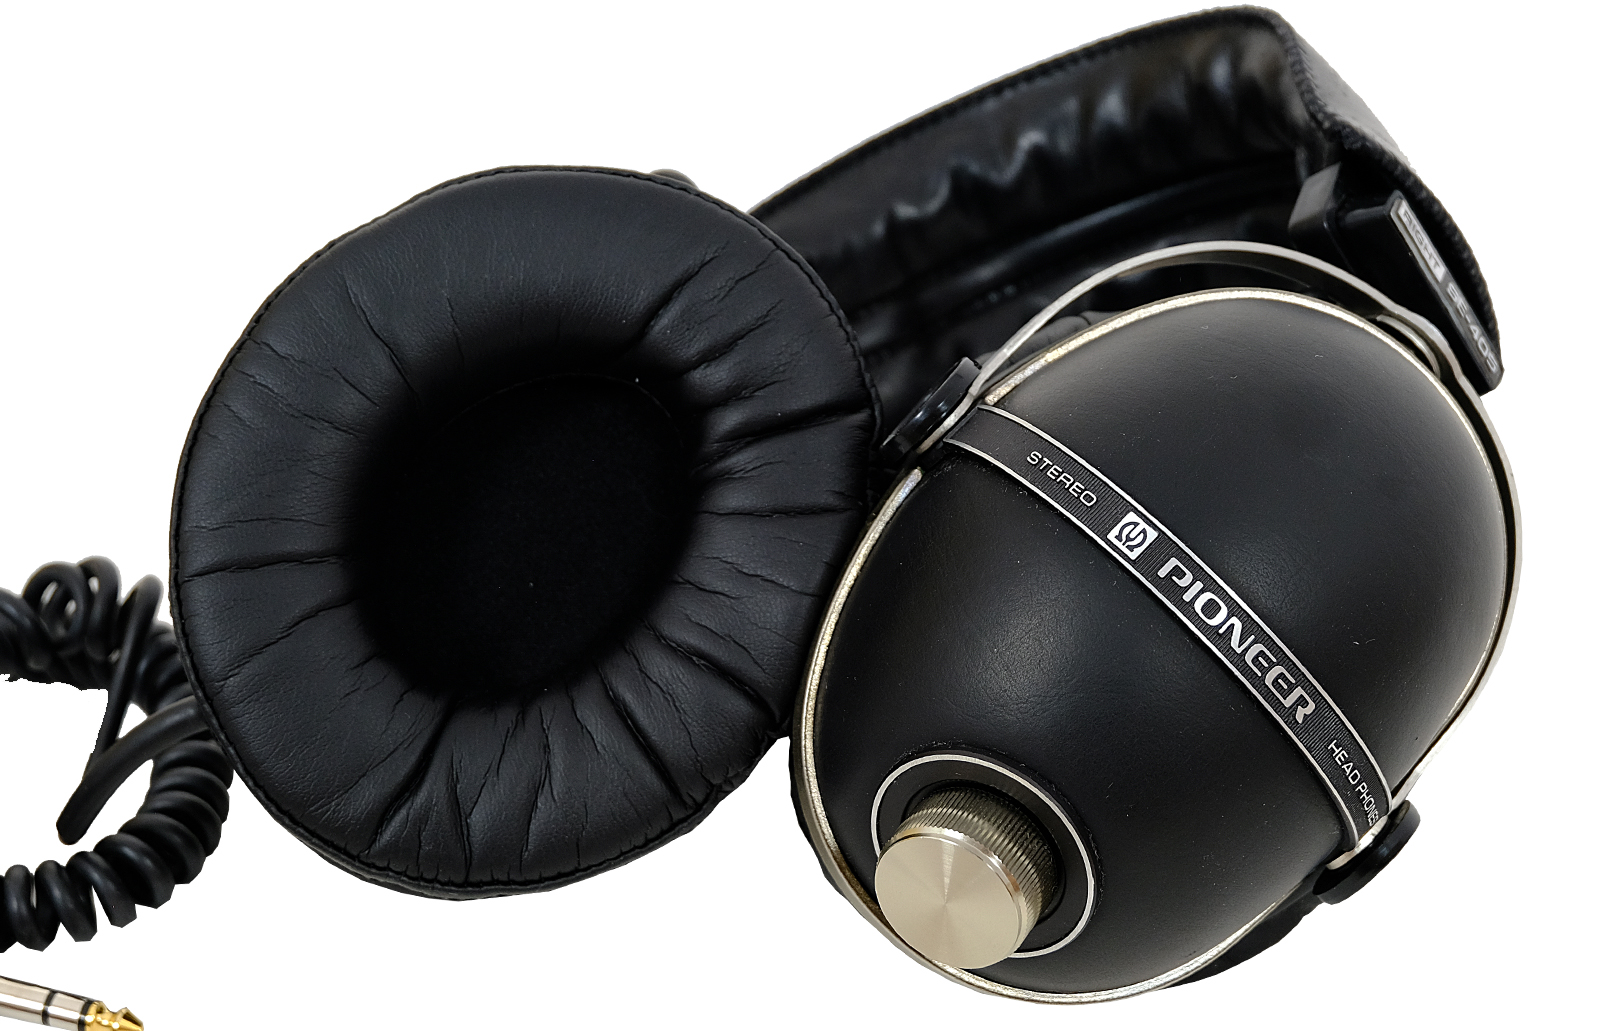 Pioneer SE-405 headphones